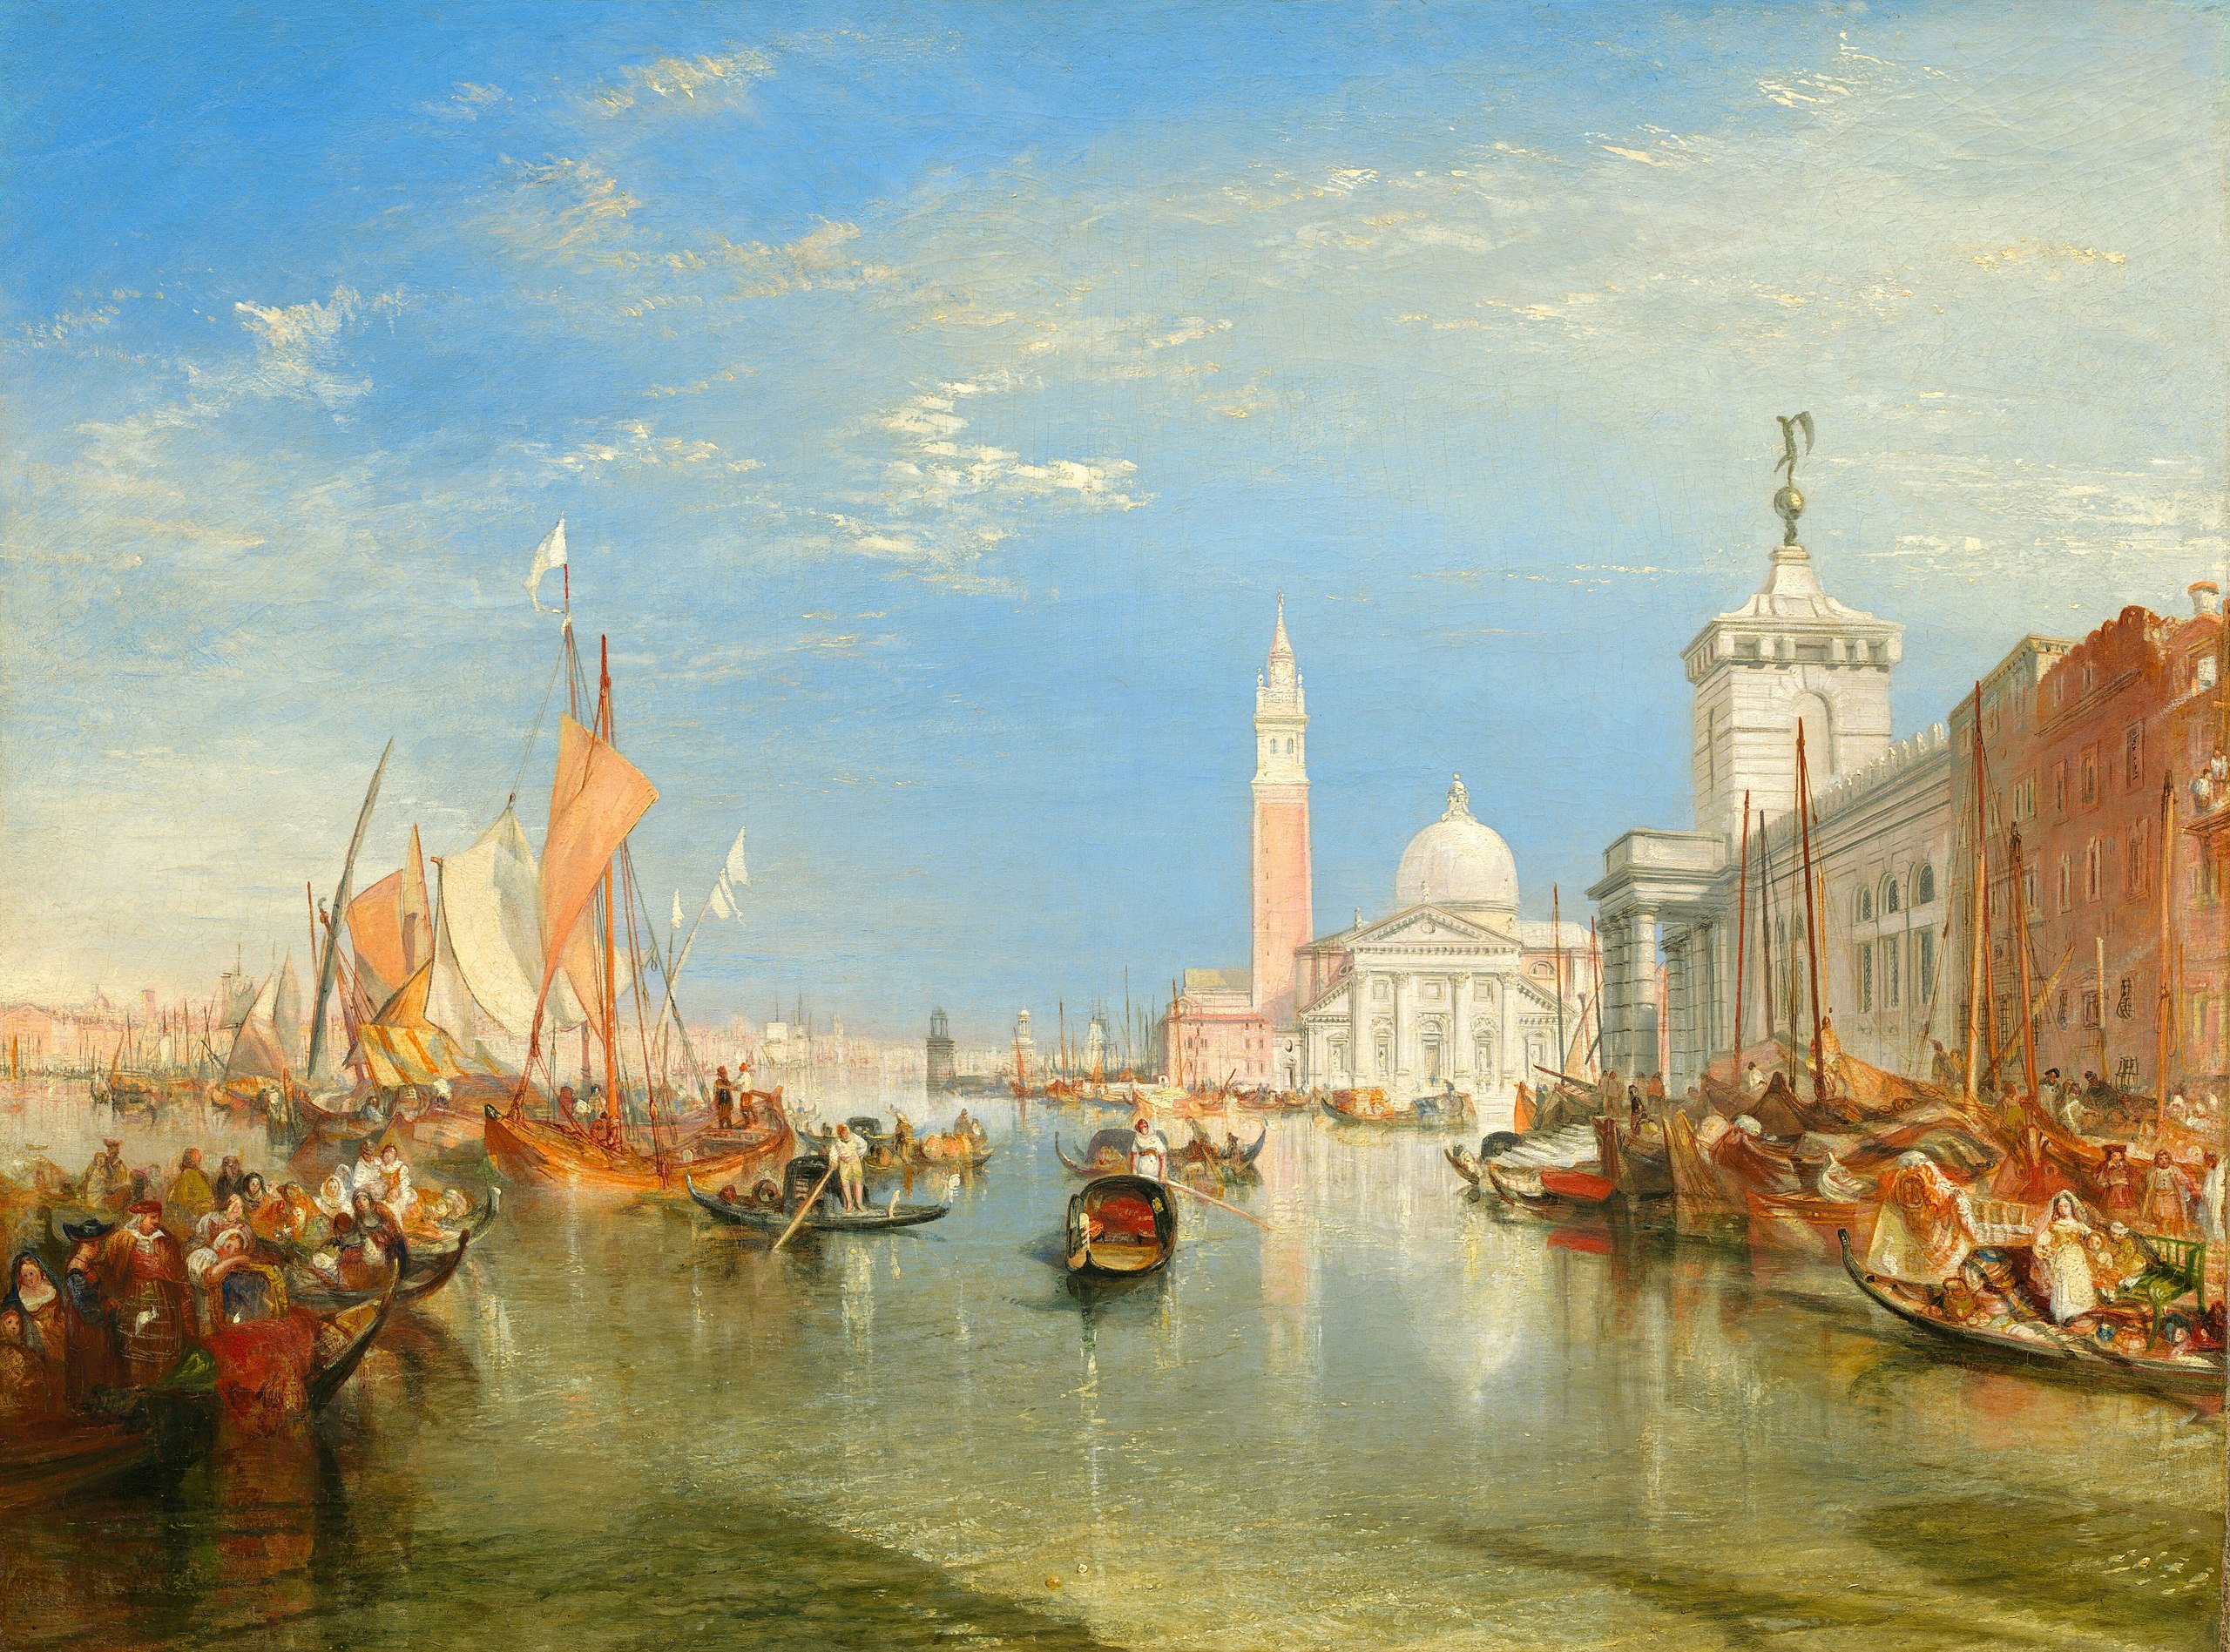 Венеція: Доґана й Сан-Джорджо Маджоре by Joseph Mallord William Turner - 1834 - 91.5 x 122 см 